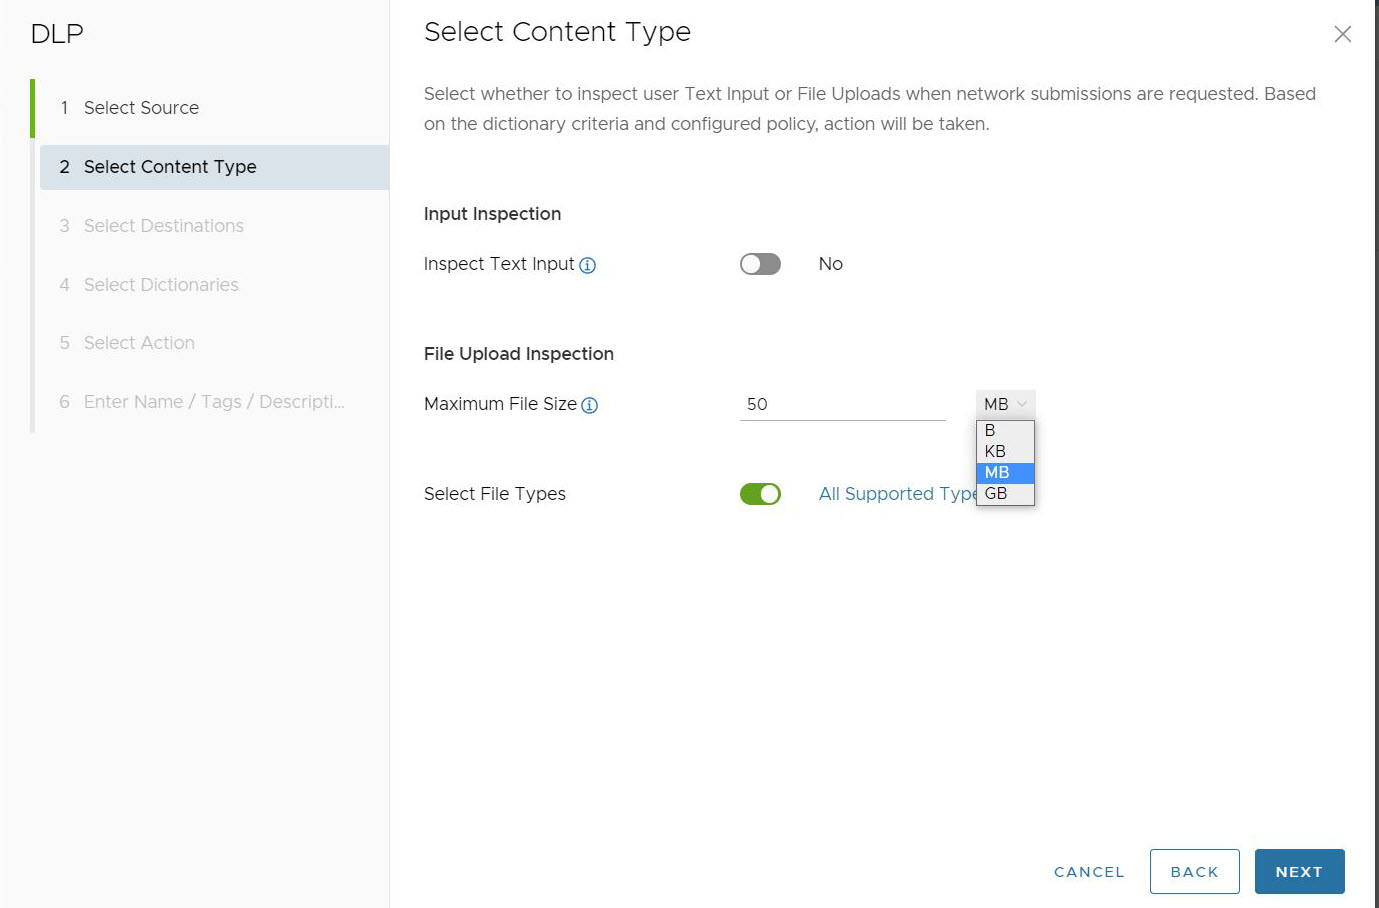 “选择内容类型”(Select Content Type) 的默认屏幕，其中显示“检查文本输入”(Inspect Text Input)、“文件上载检查”(File Upload Inspection) 以及“最大文件大小”(Maximum File Size) 和“选择文件类型”(Select File Types)。